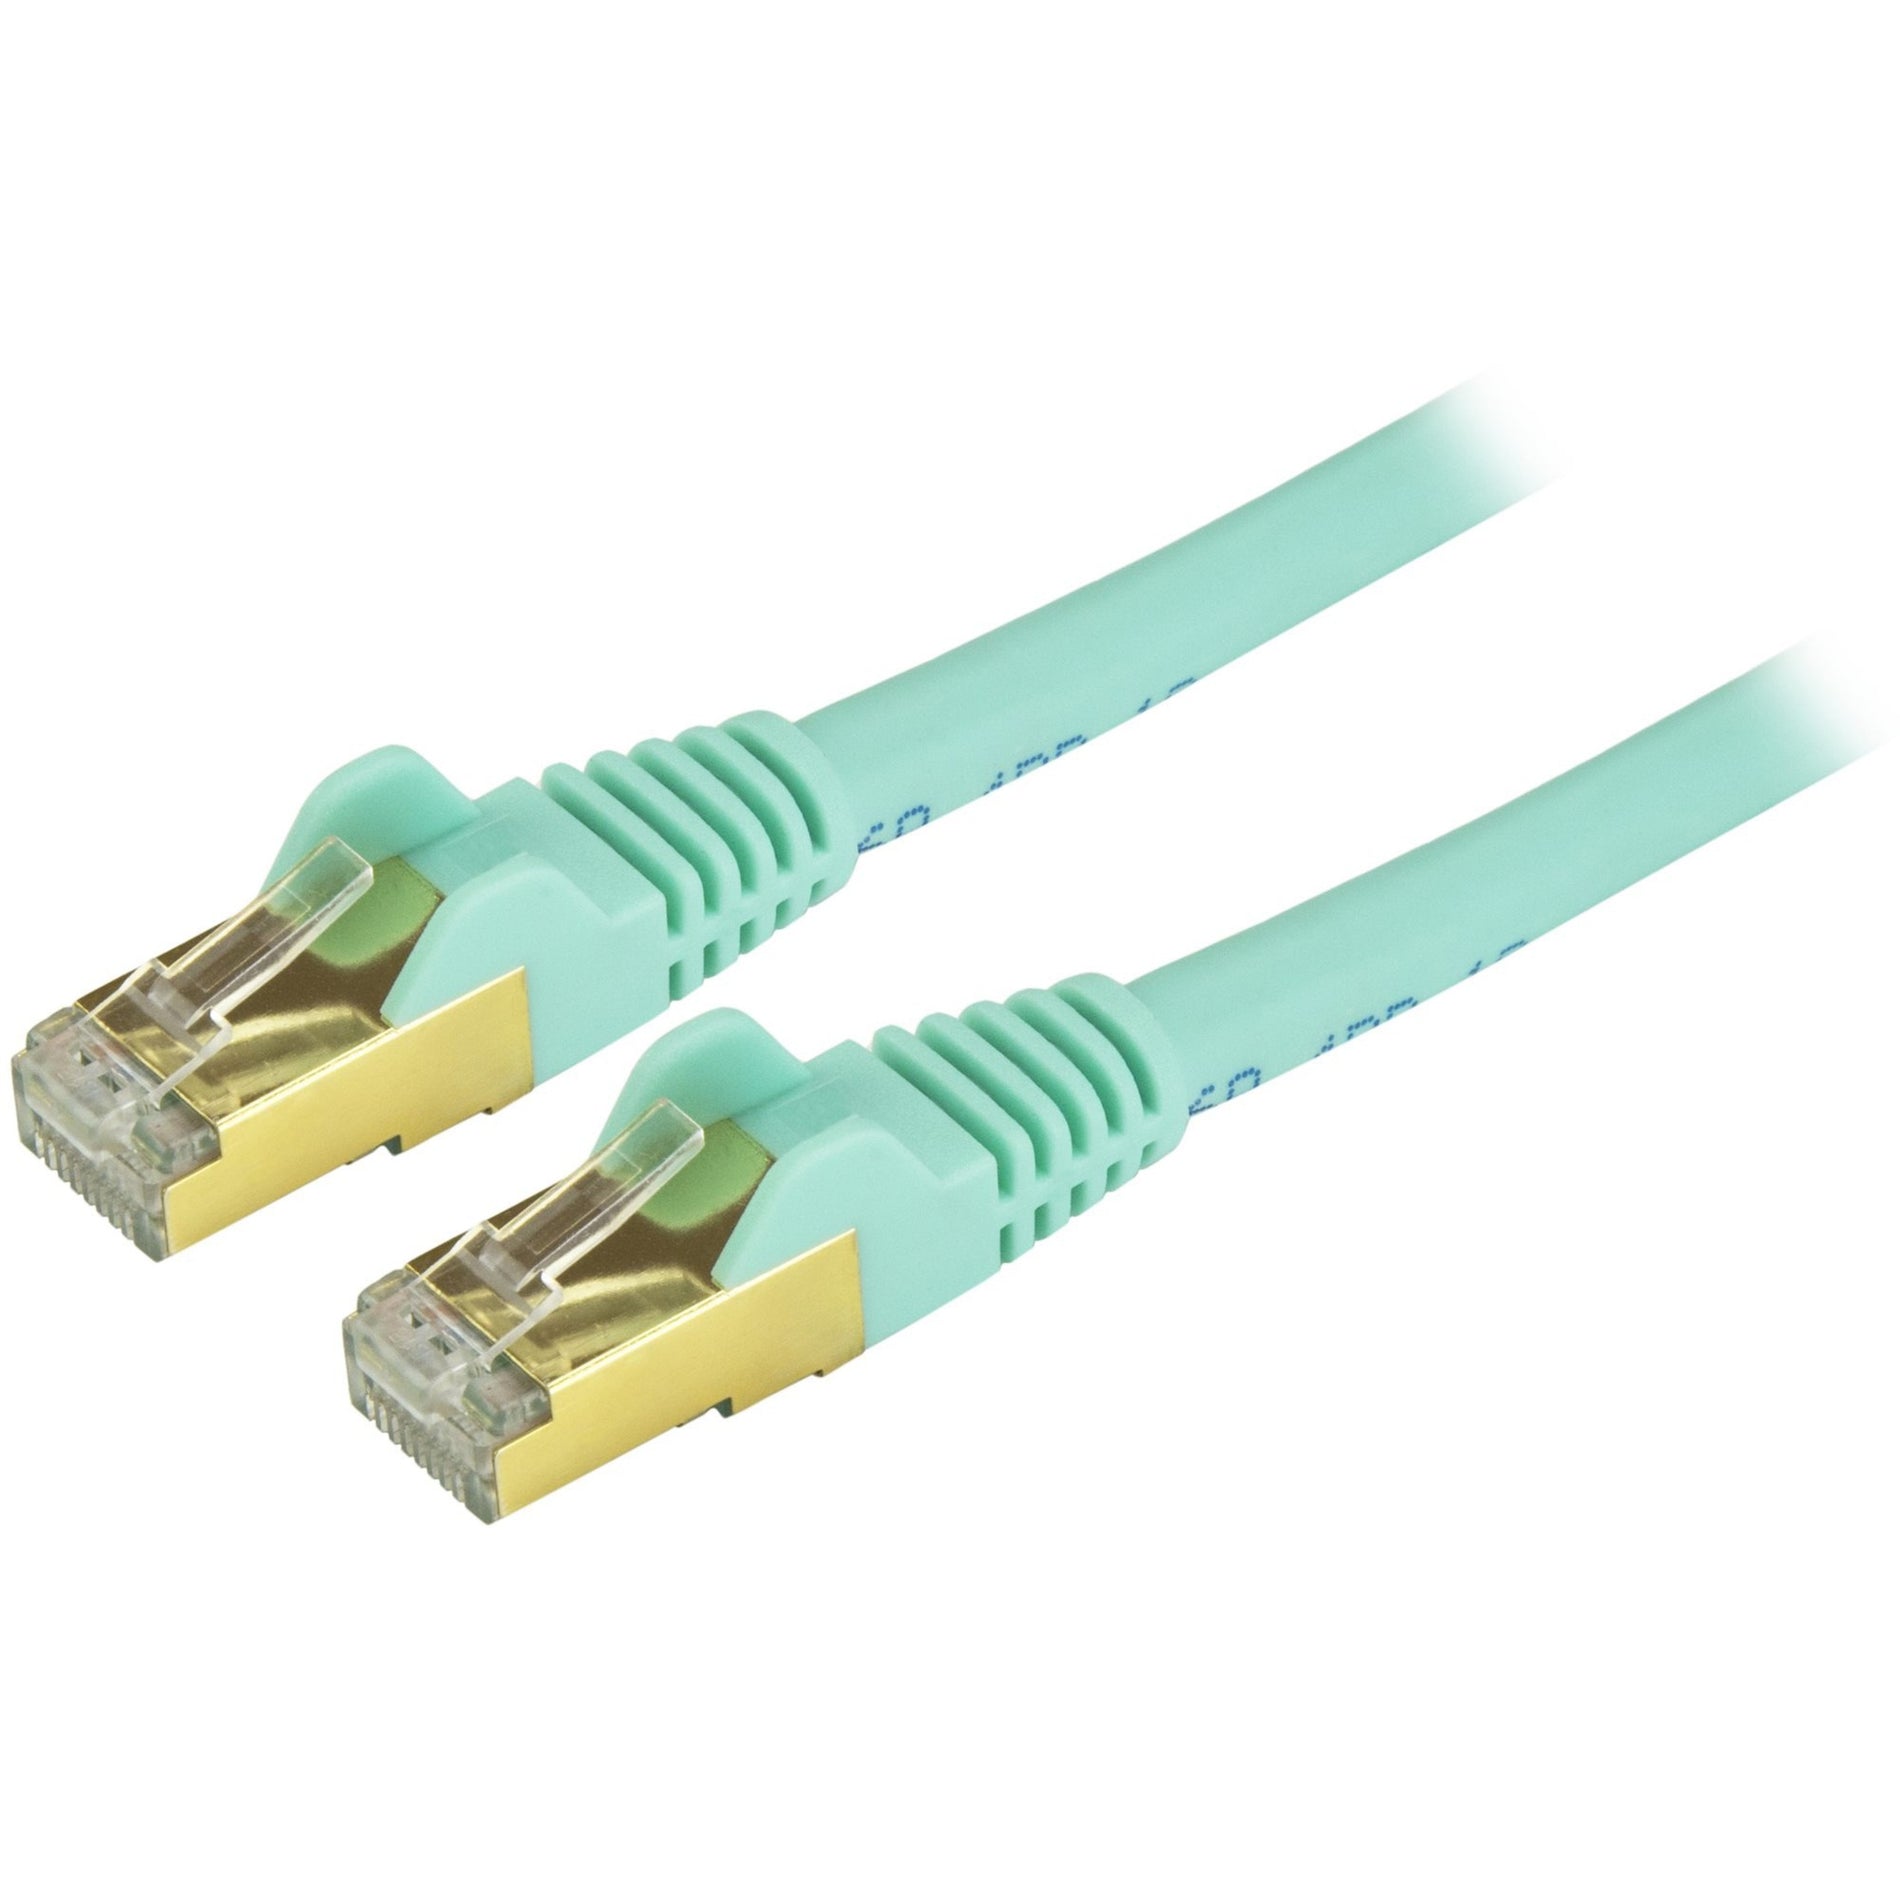 StarTech.com C6ASPAT25AQ Cat6a Ethernet Patch Cable - Shielded (STP) - 25 ft., Aqua, Long Ethernet Cord